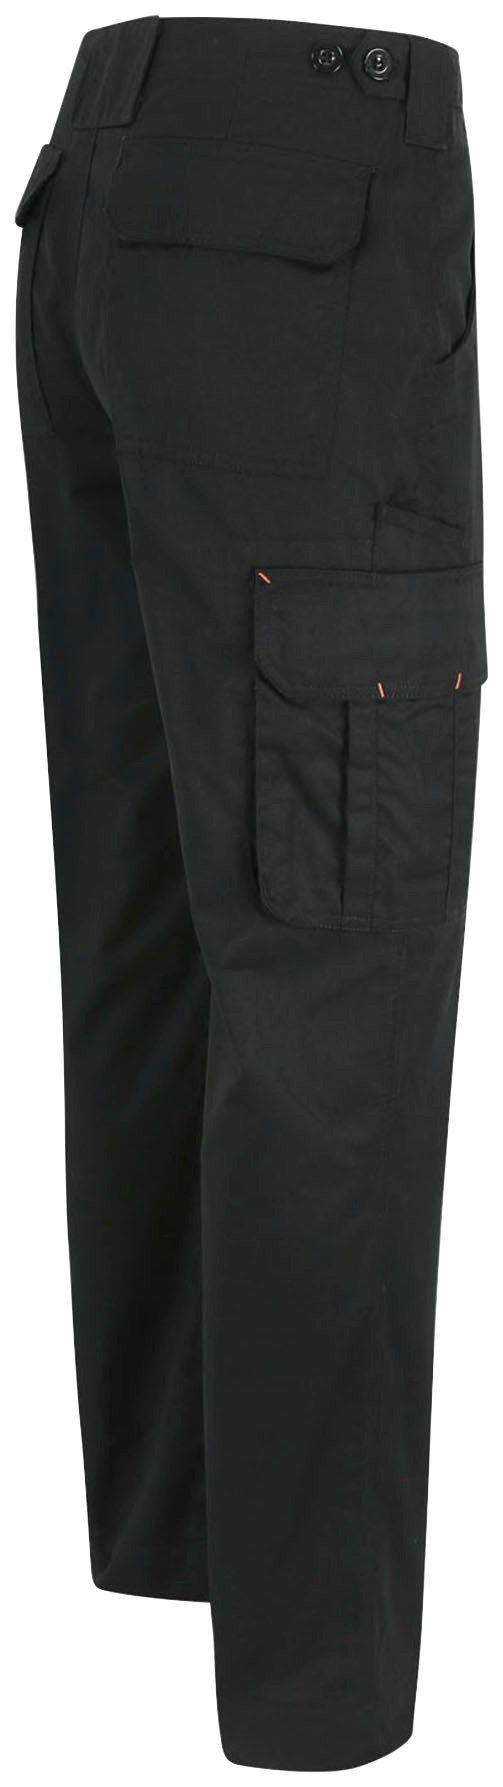 Herock Arbeitshose Thor Hose Wasserabweisend, schwarz viele 7 leicht, Farben Bund, Taschen, einstellbarer